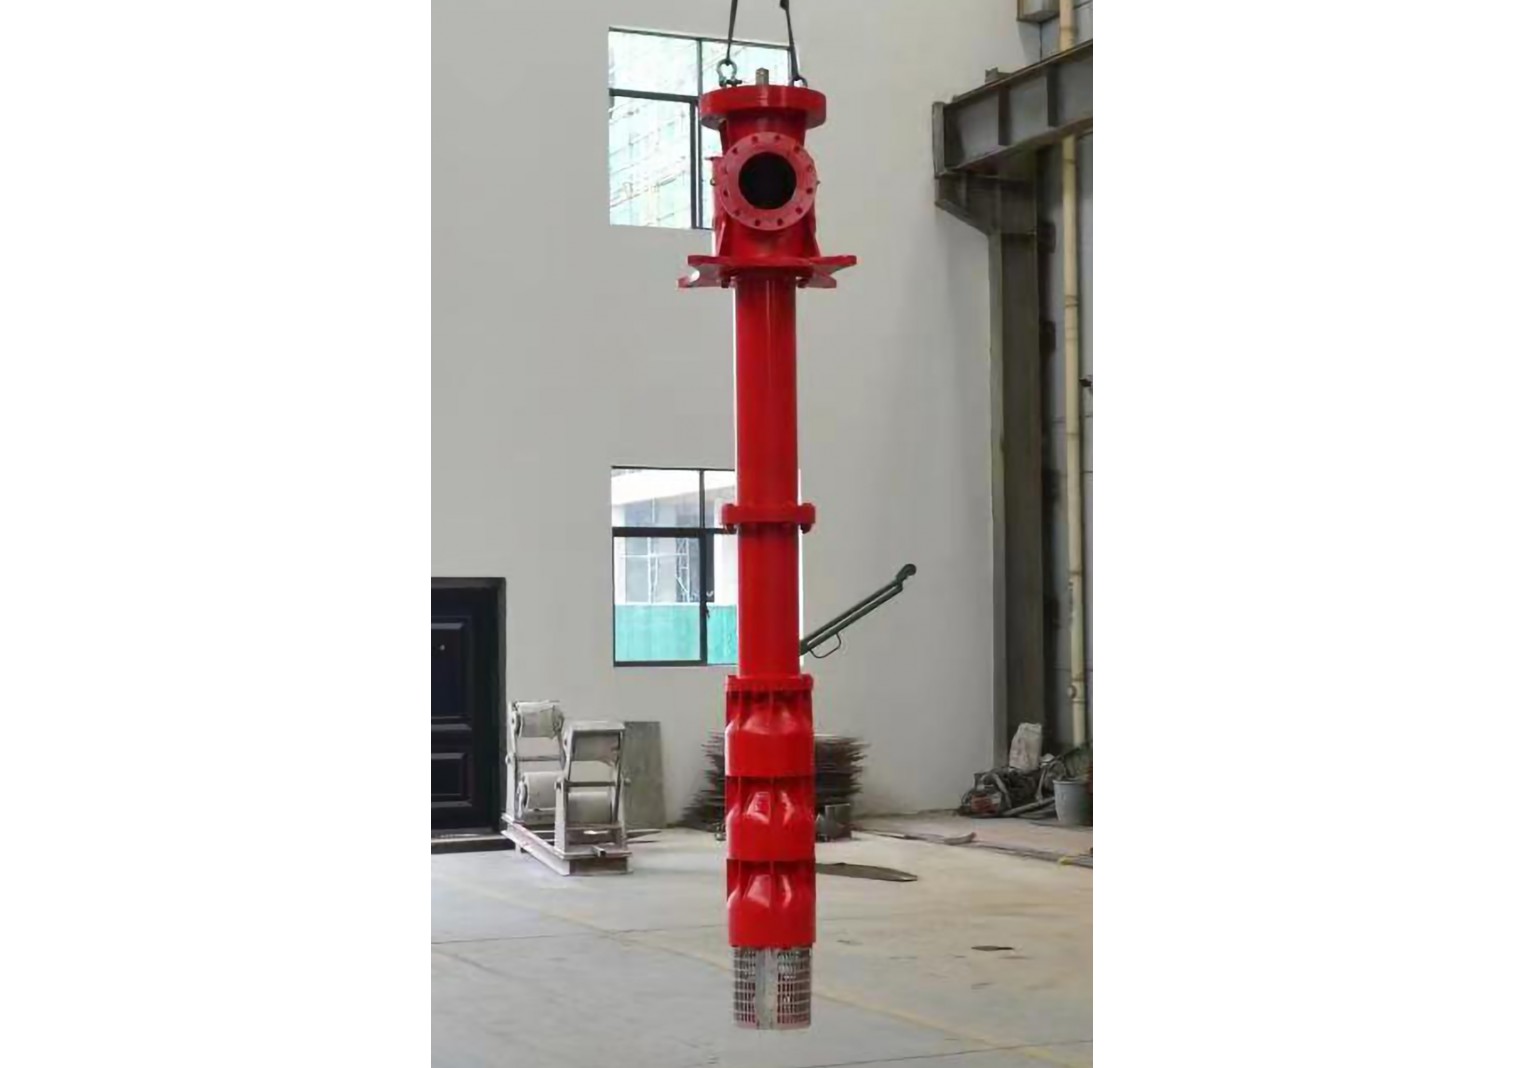 Vertical Turbine Fire Pump